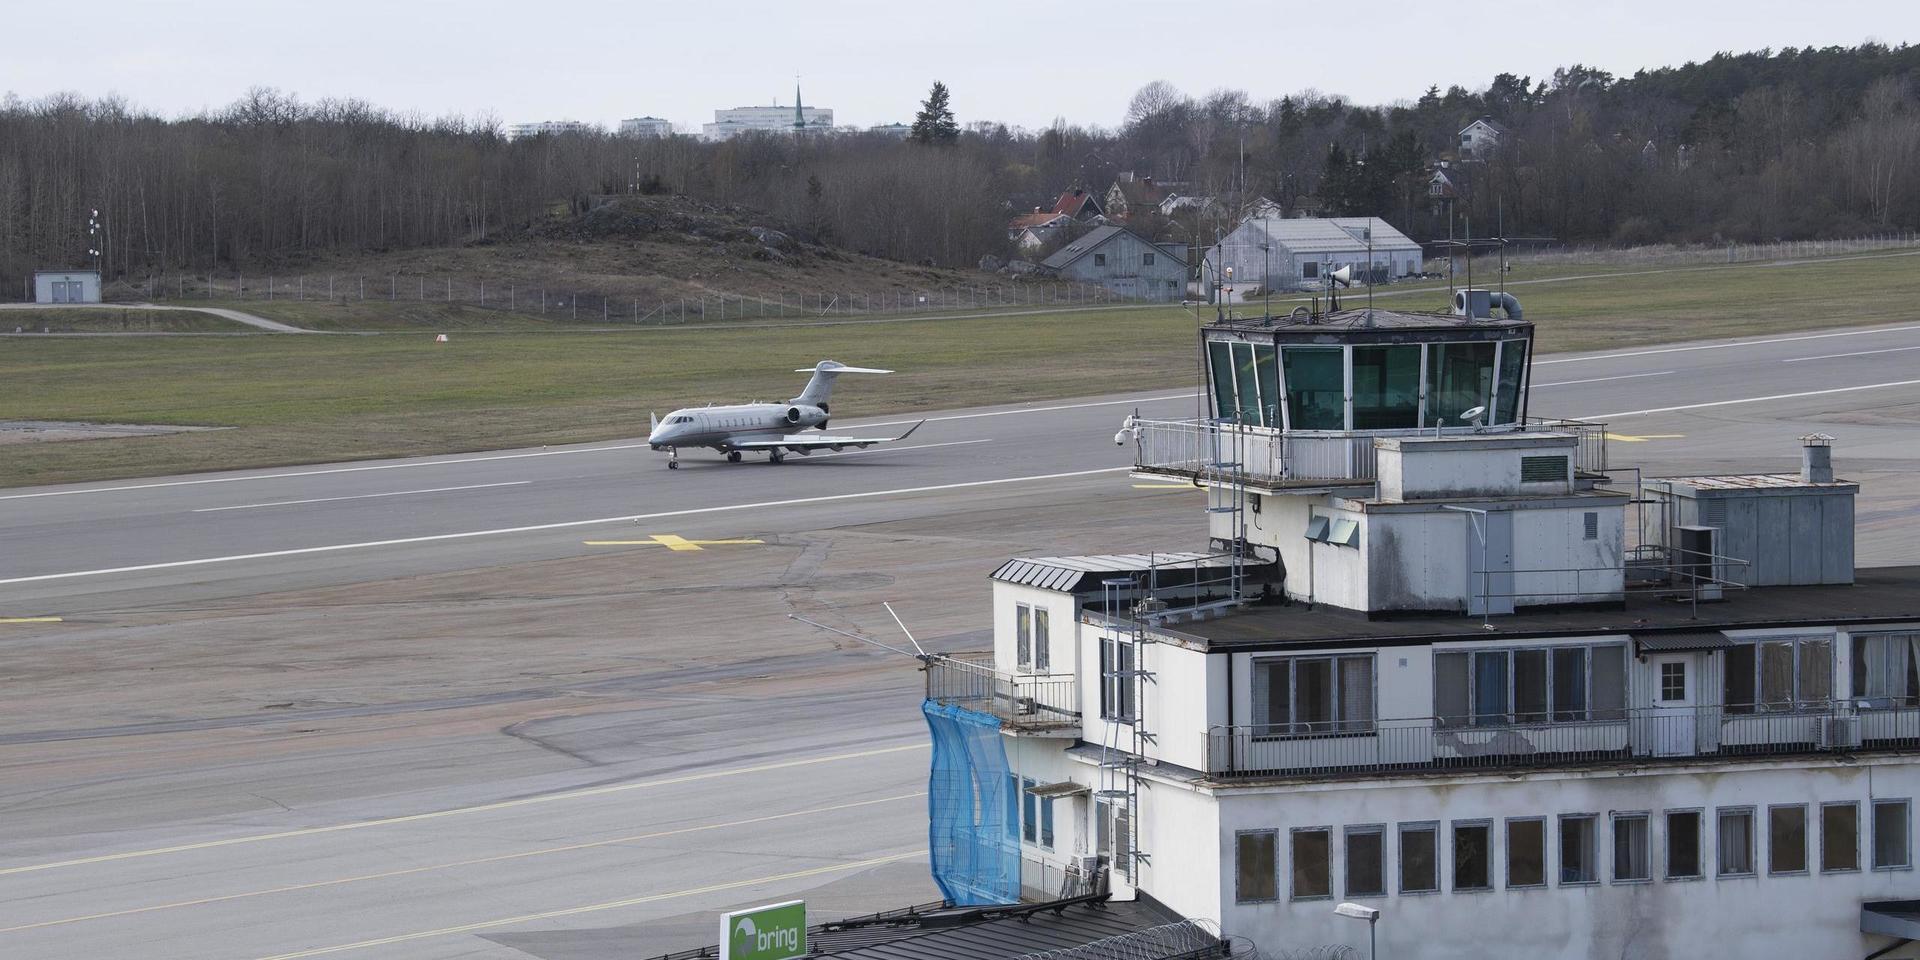 Regeringen vill stänga Bromma flygplats och bygga bostäder. En utredning har försökt ta reda på hur det kan ske och vad som behövs på Arlanda för att ta emot trafiken där istället. Arkivbild.